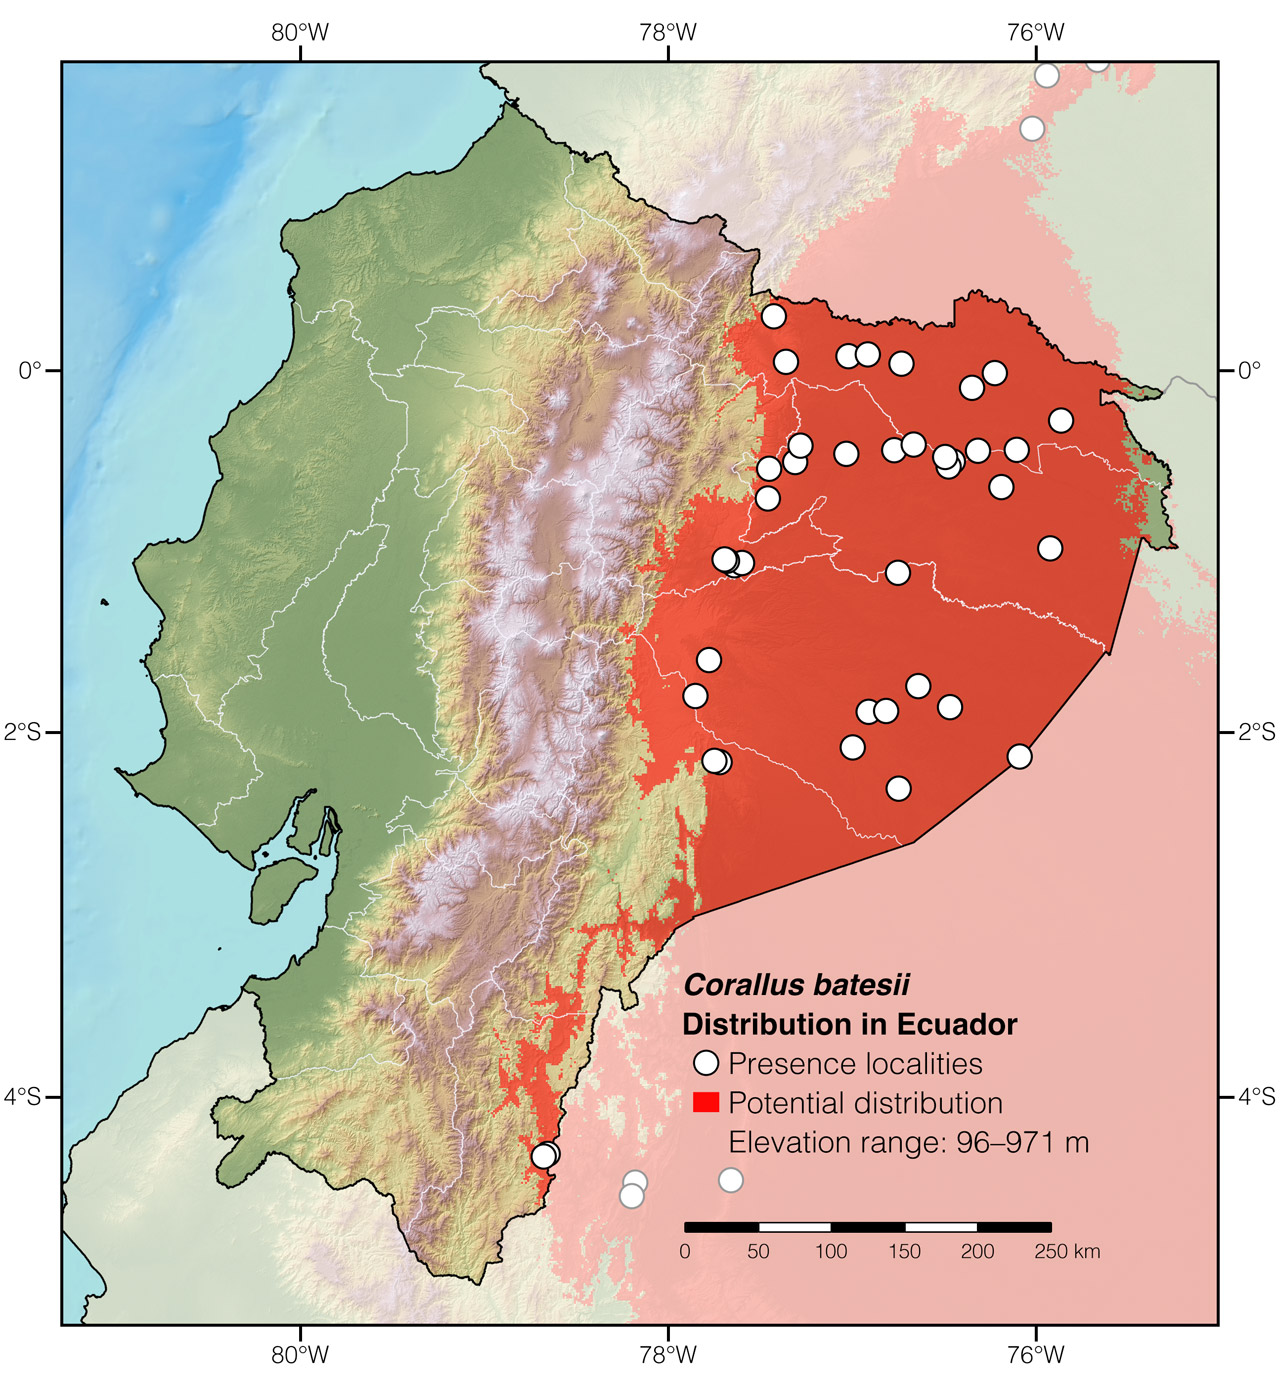 Distribution of Corallus batesii in Ecuador